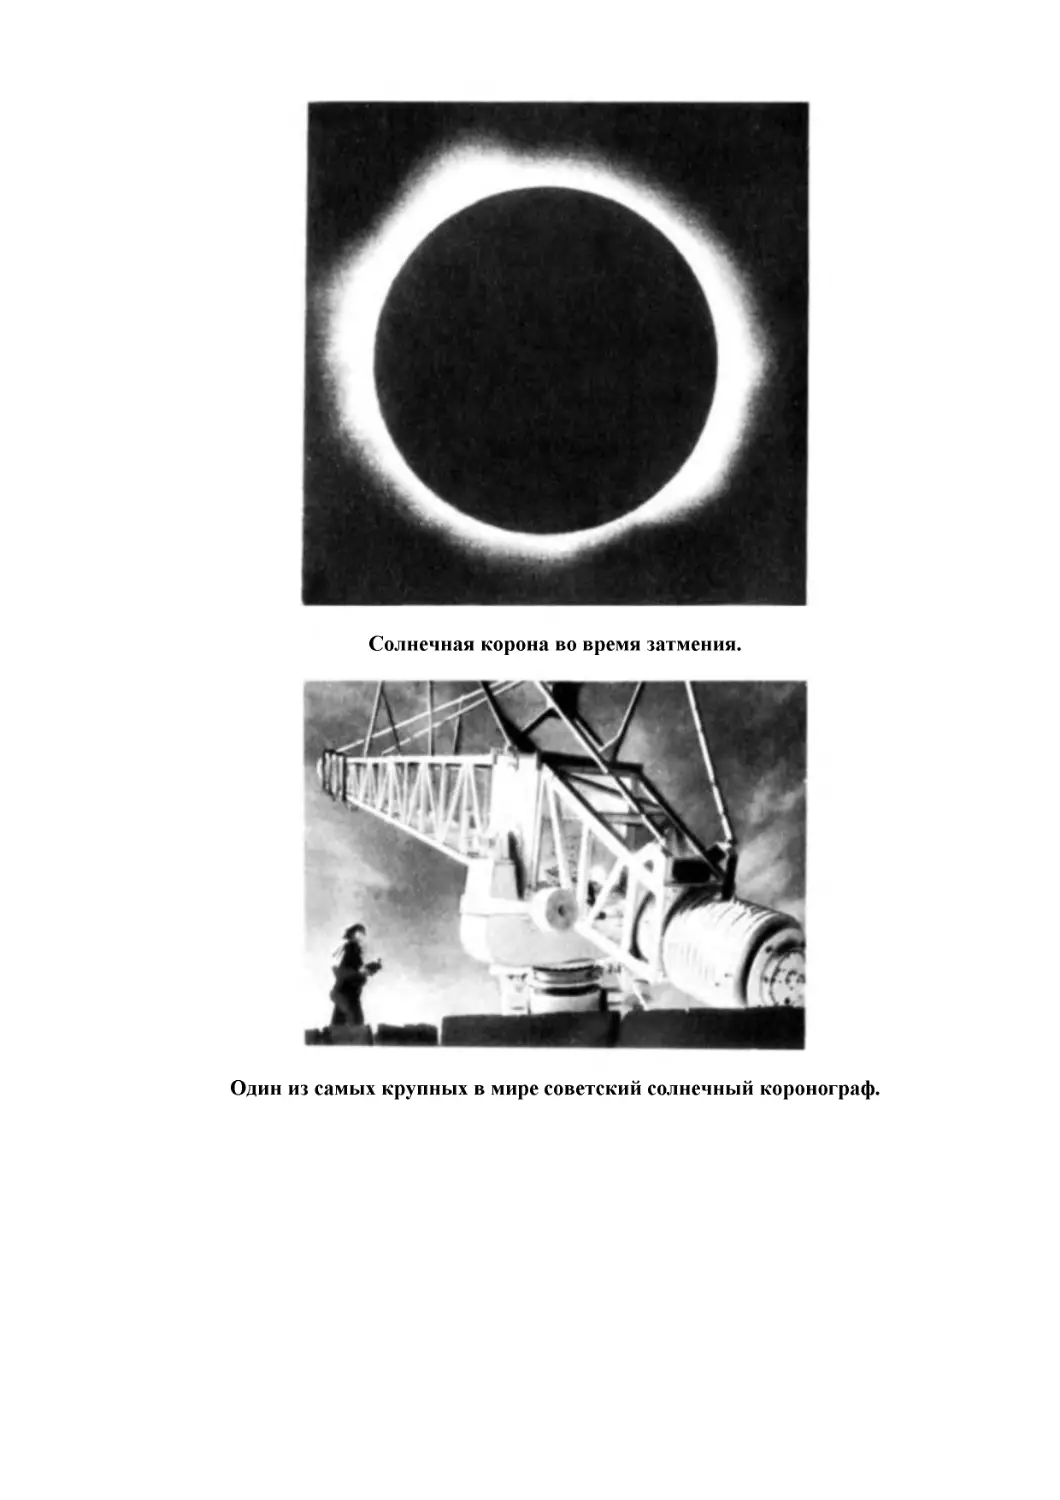 Солнечная корона во время затмения.
Один из самых крупных в мире советский солнечный коронограф.